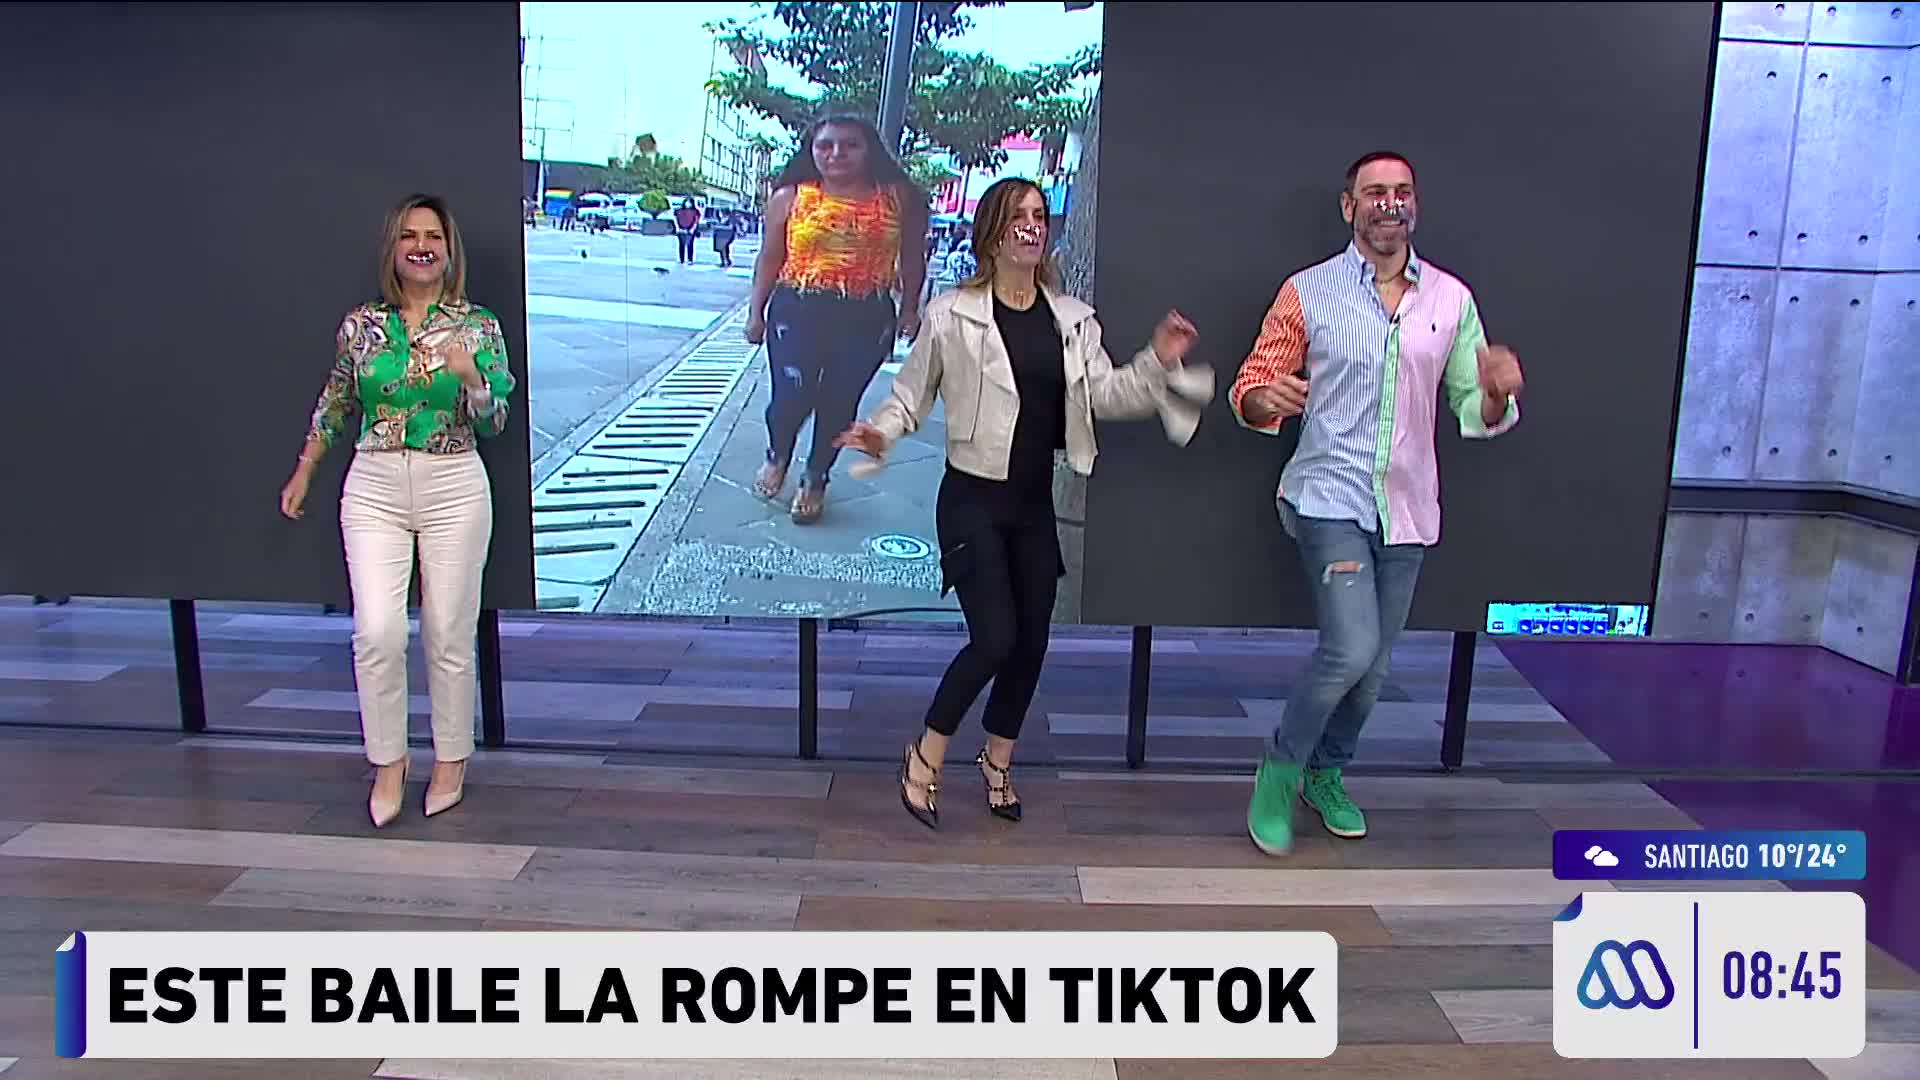 Michelle, Diana y José Antonio bailando el desafío de TikTok